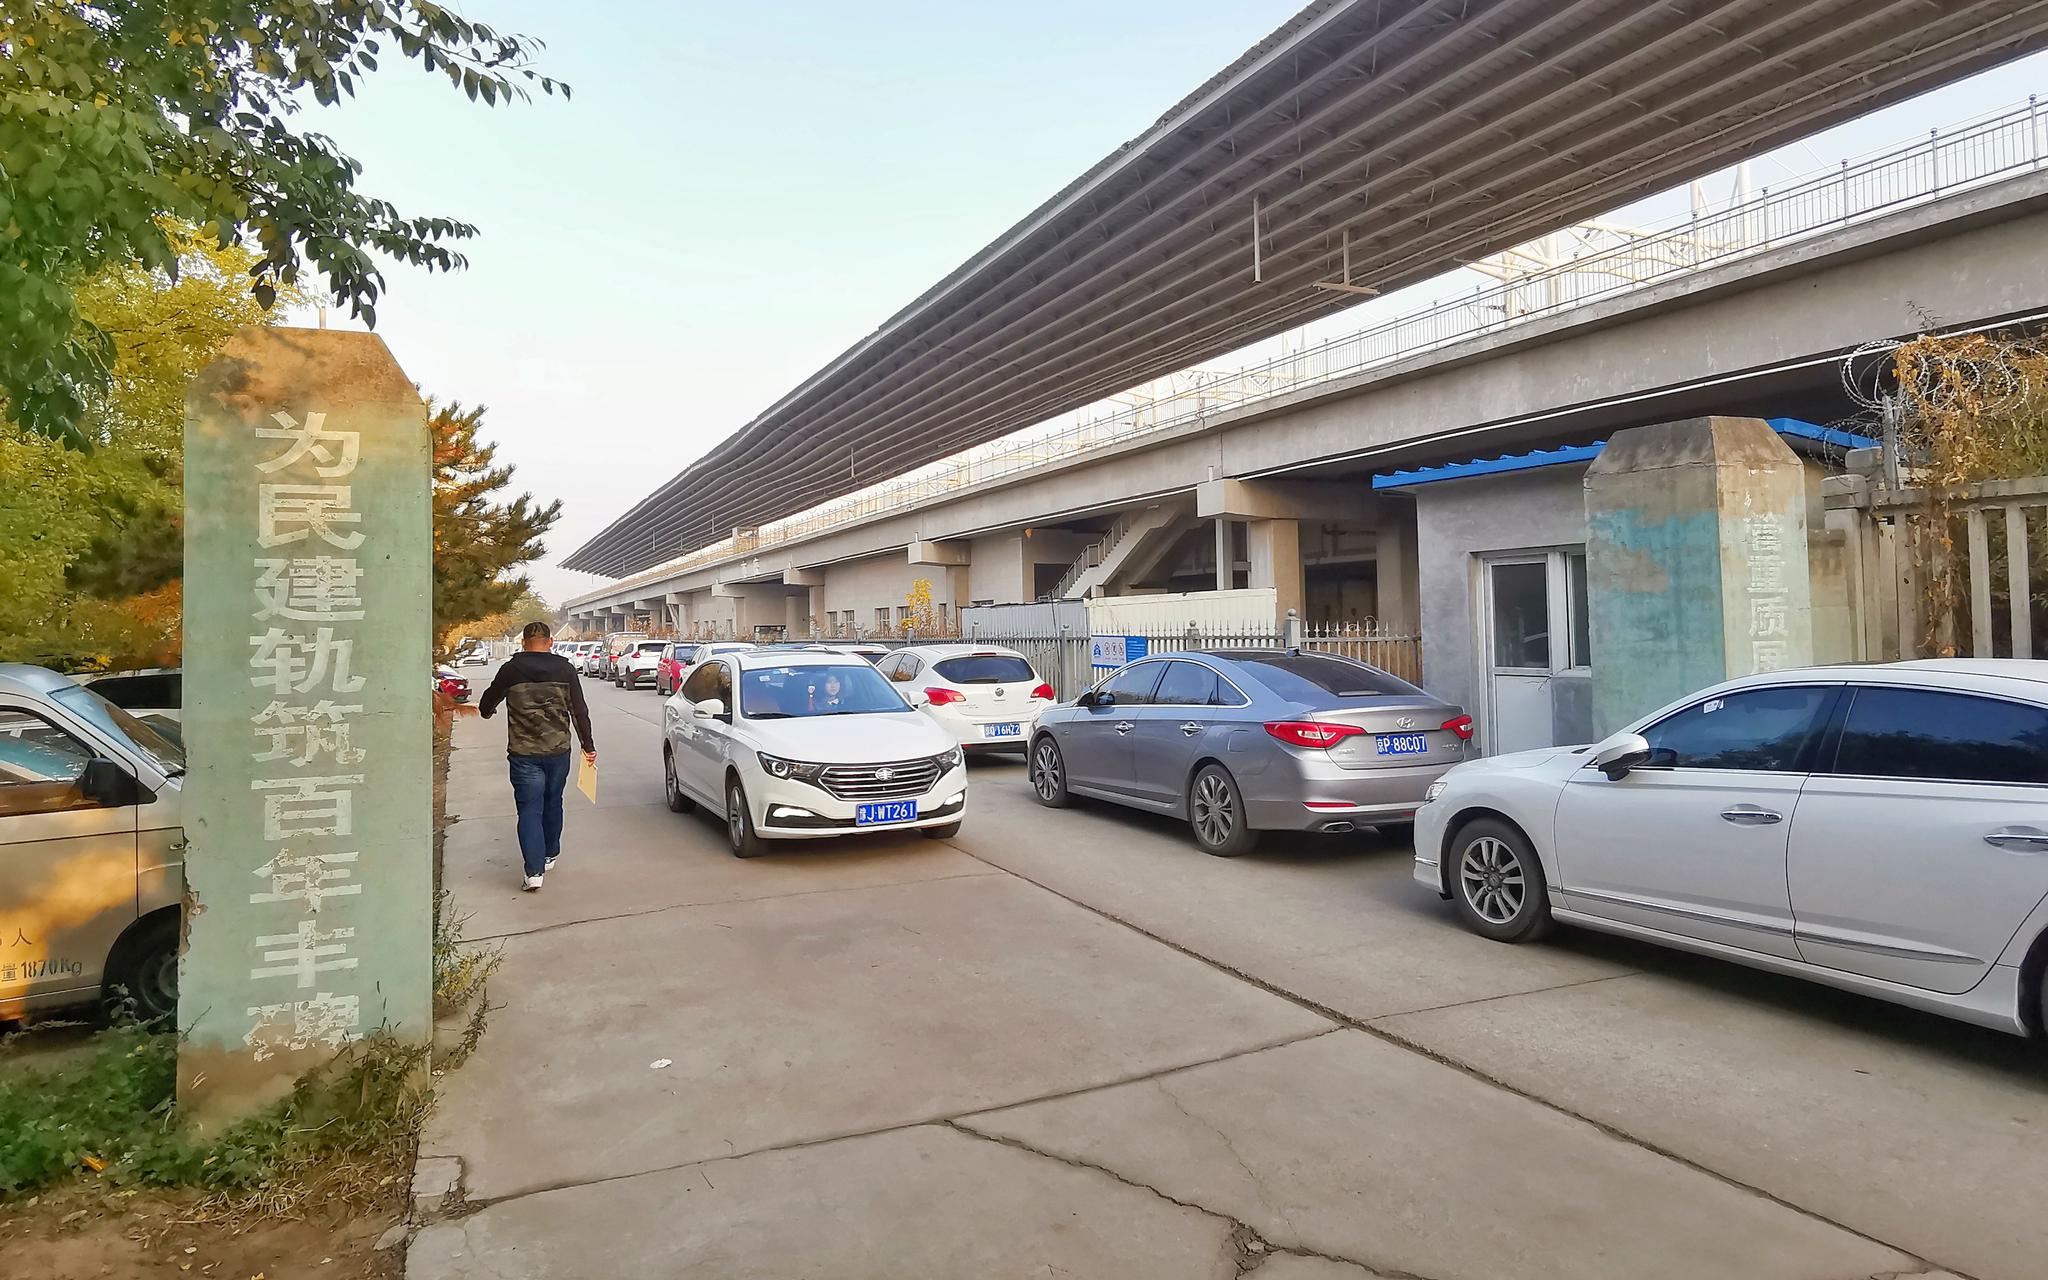 亦庄火车站旁的一条小路中停满了机动车。摄影/新京报记者 裴剑飞